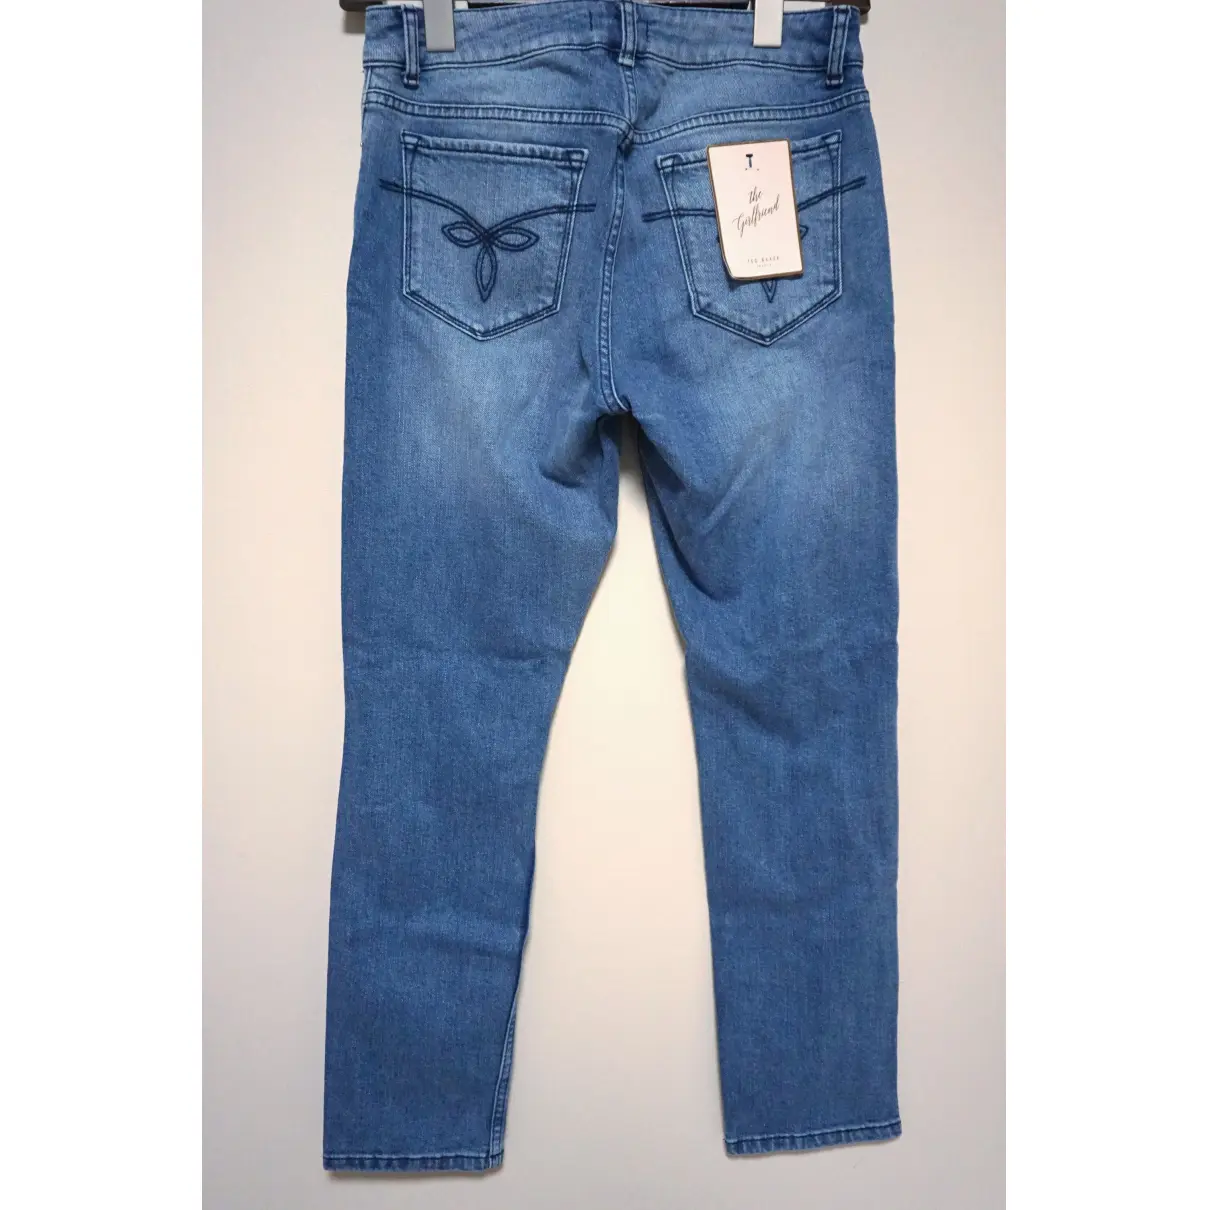 Buy Ted Baker Boyfriend jeans online